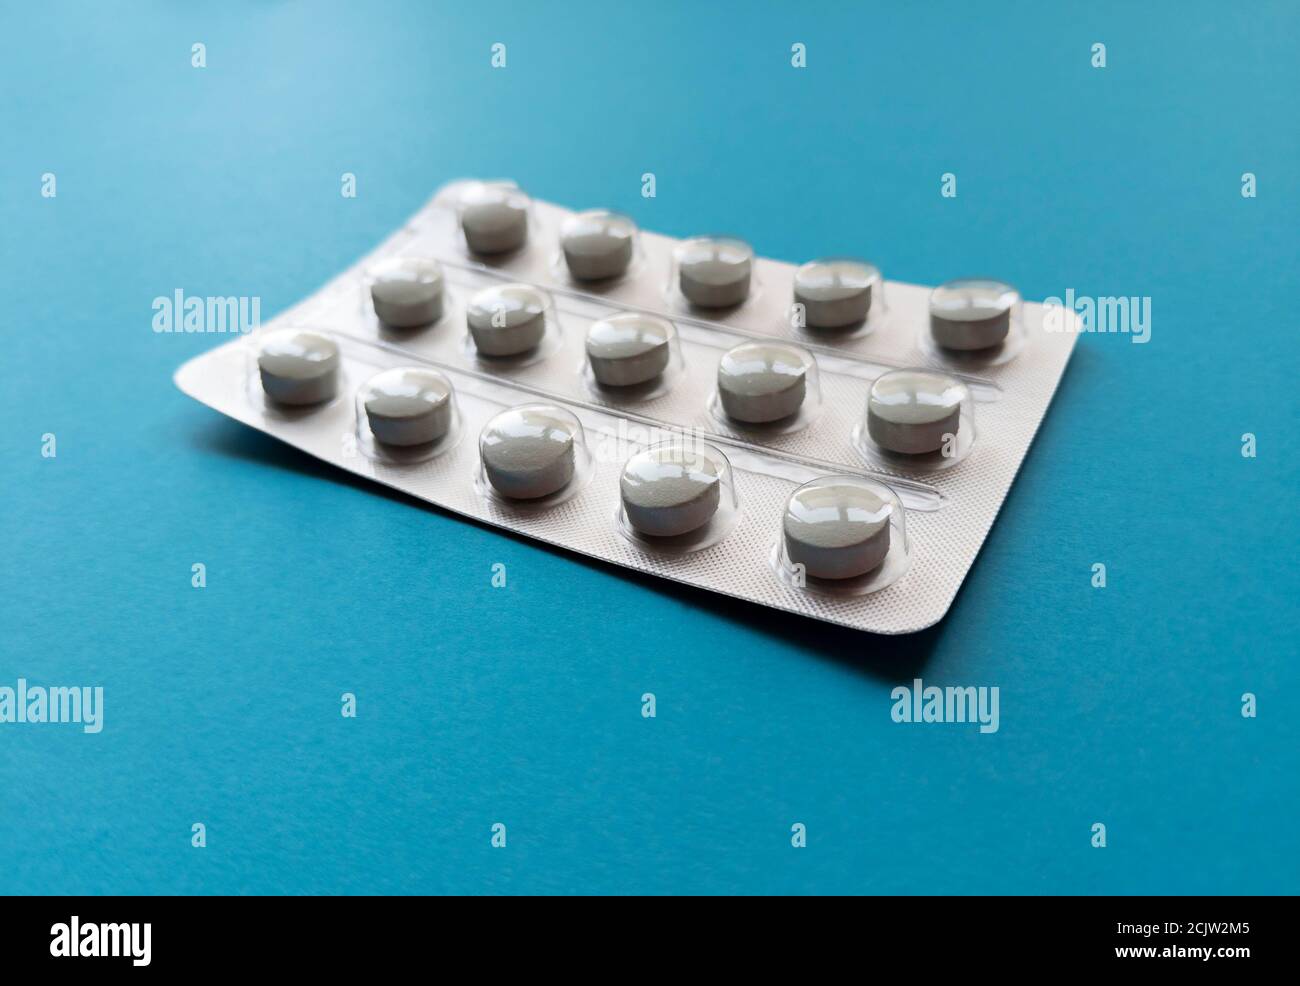 Eine Blister von Tabletten auf blauem Hintergrund. Medizinisches Konzept.  Stock Foto Stockfotografie - Alamy